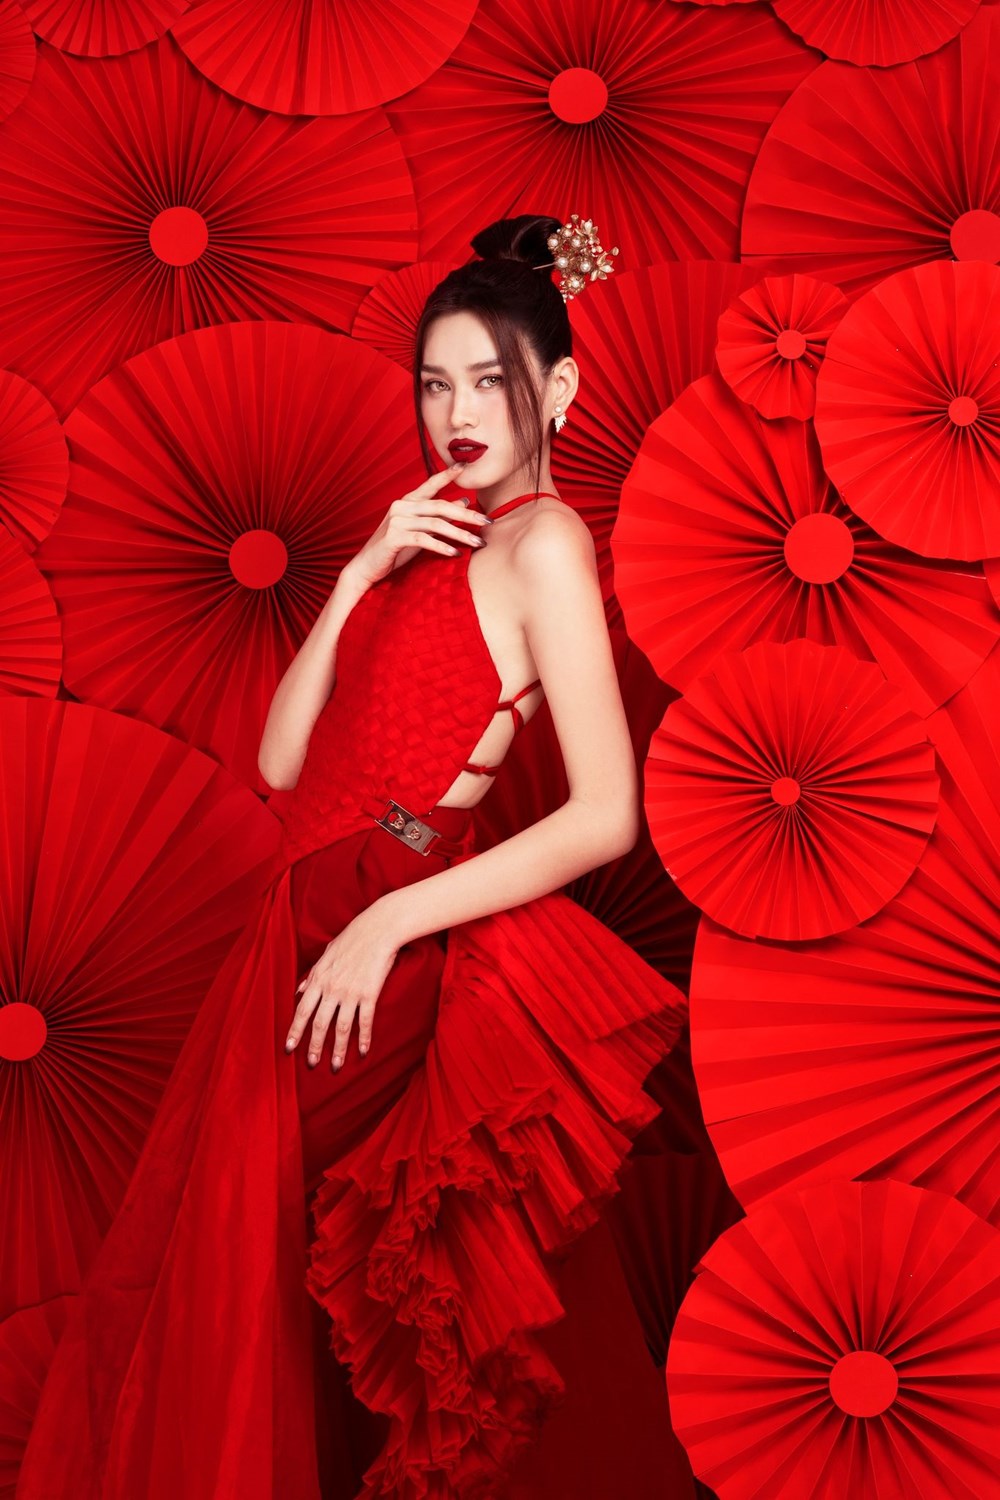 Hoa hậu Đỗ Hà diện yếm đỏ, khoe lưng trần gợi cảm trong bộ ảnh Tết - ảnh 3